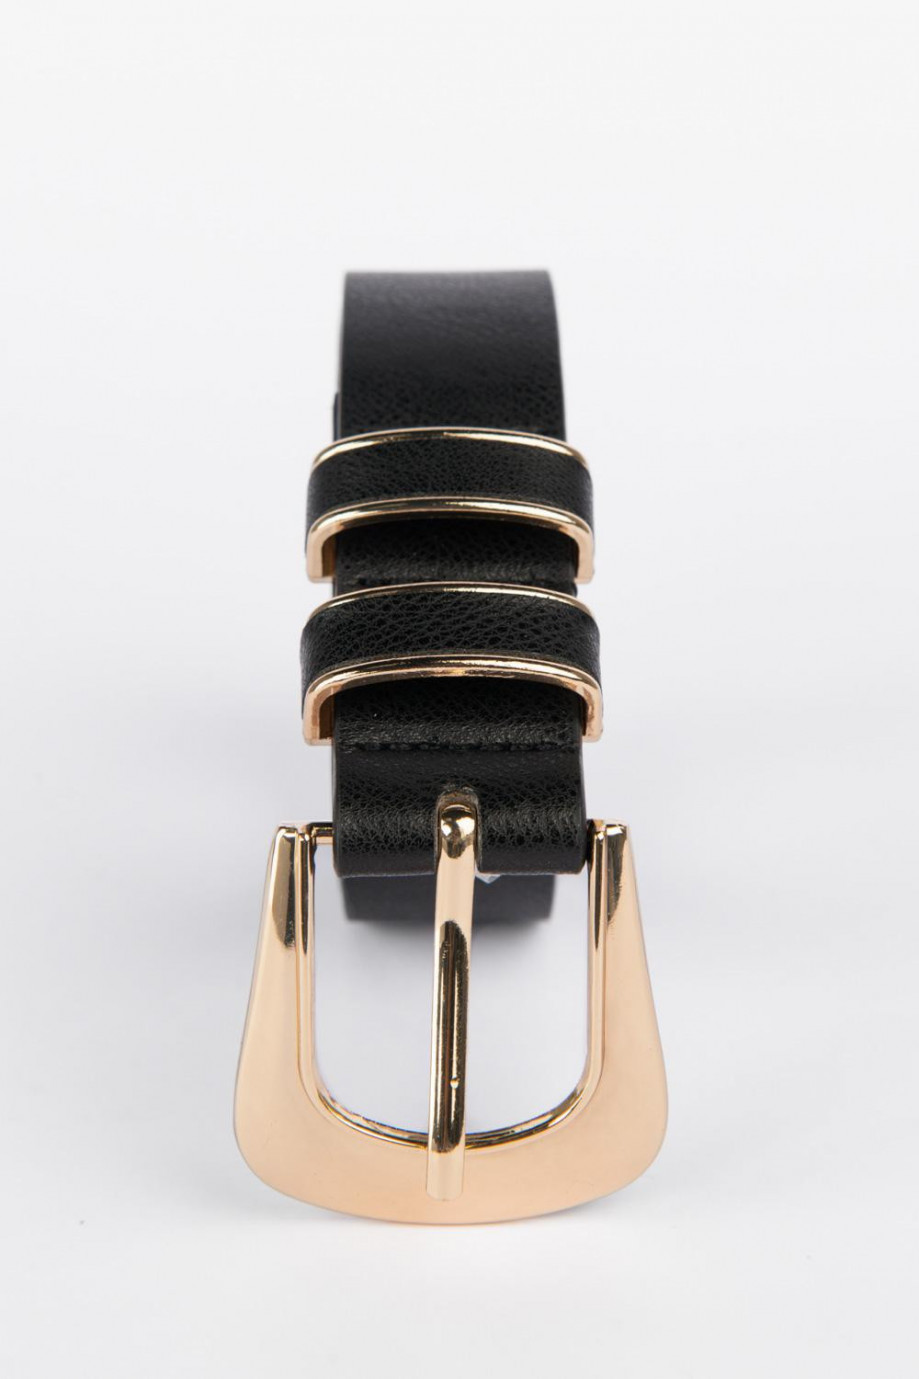 Cinturón negro sintético con doble pasador y hebilla metálica